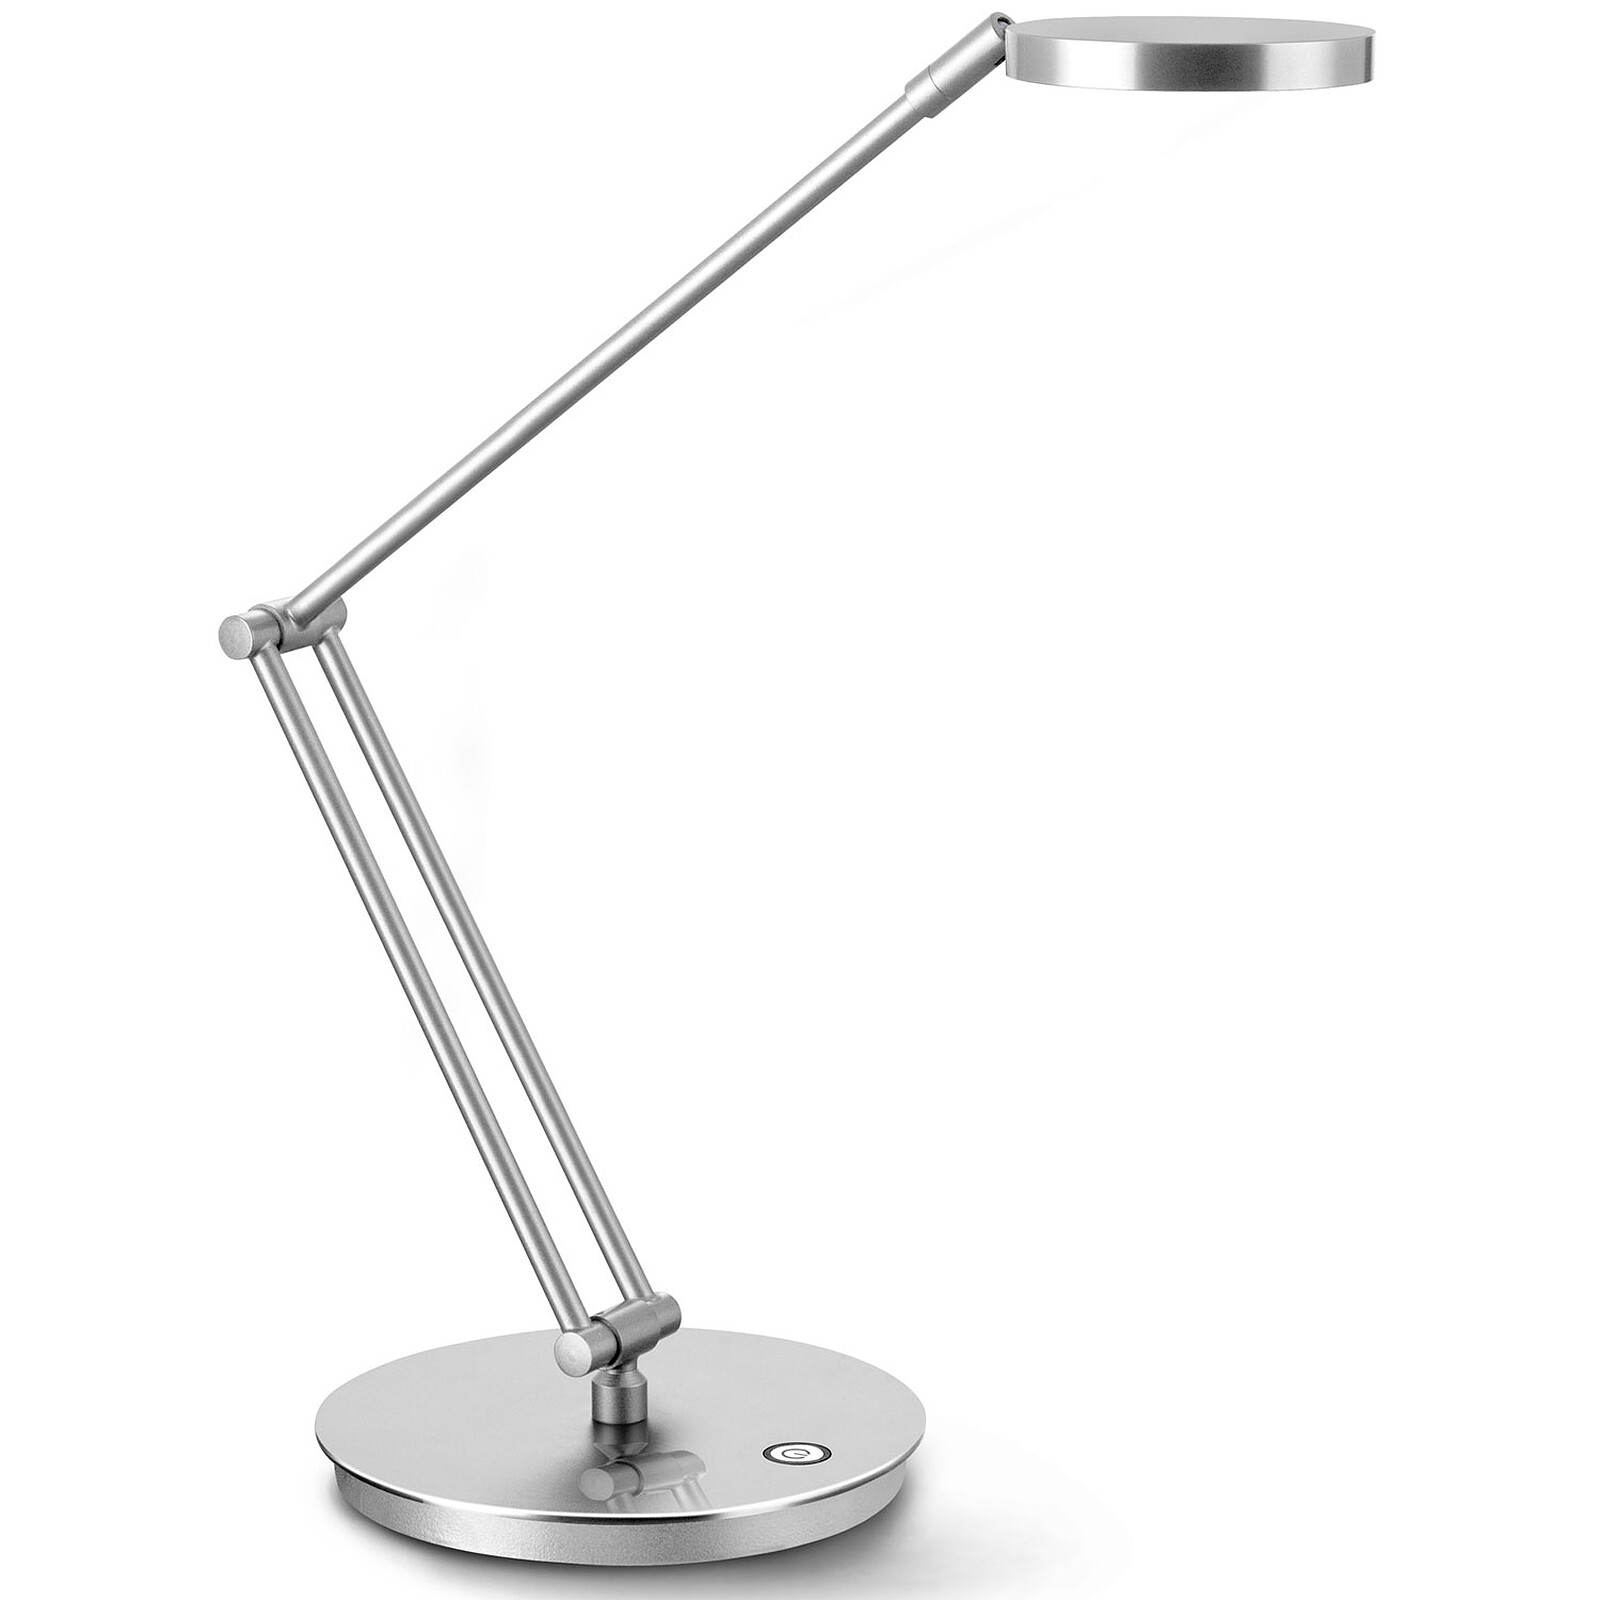 Unilux Strata - Lampe de bureau - Garantie 3 ans LDLC